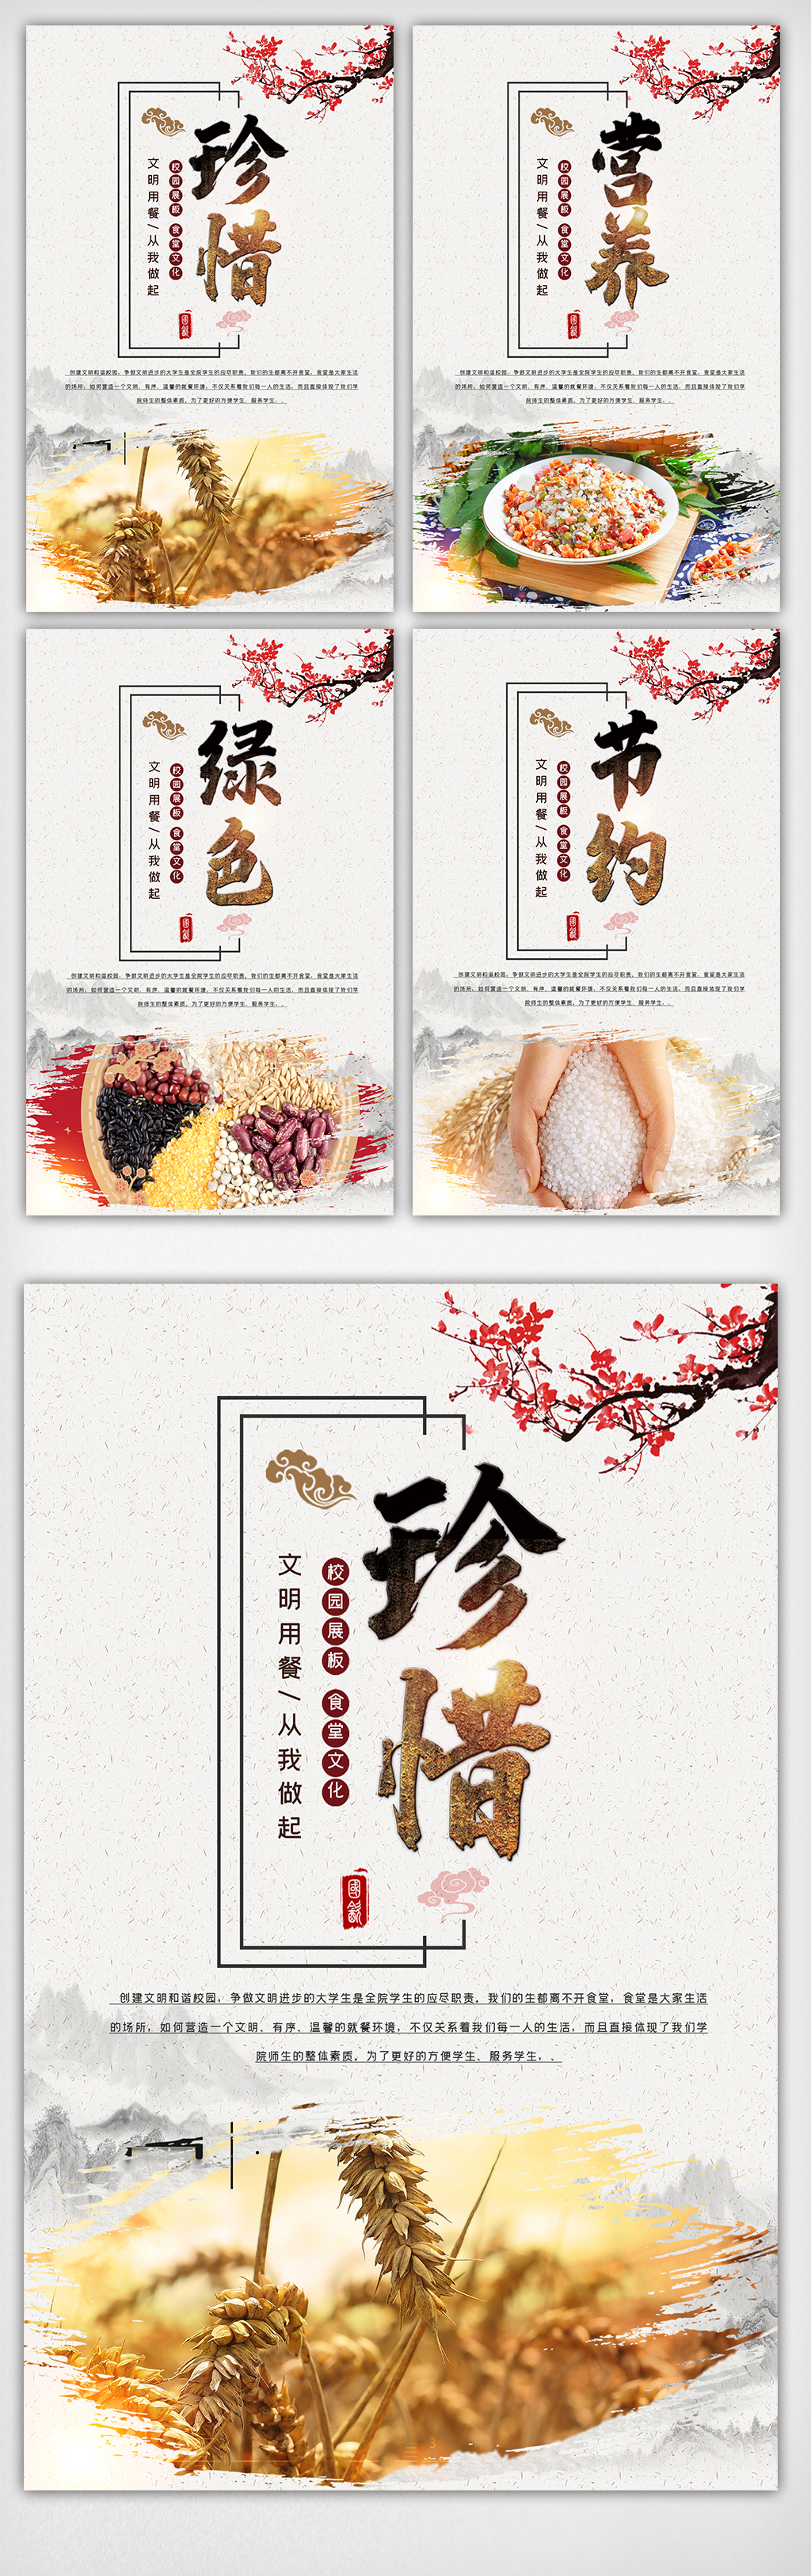 中国风水墨食堂文化挂画展板图图片